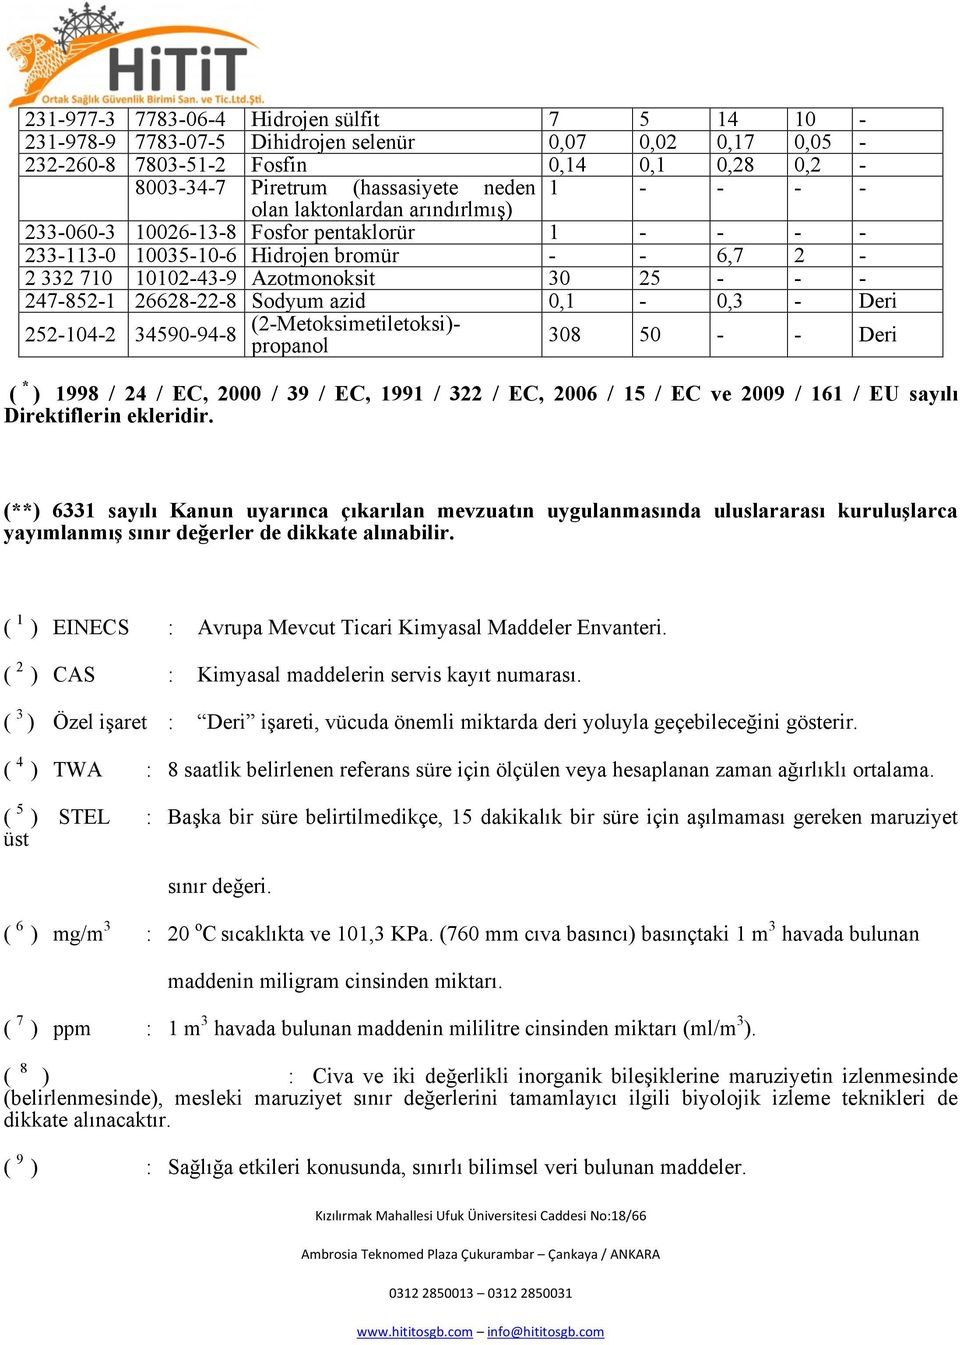 Sodyum azid 0,1-0,3 - Deri 252-104-2 34590-94-8 (2-Metoksimetiletoksi)- propanol 308 50 - - Deri ( * ) 1998 / 24 / EC, 2000 / 39 / EC, 1991 / 322 / EC, 2006 / 15 / EC ve 2009 / 161 / EU sayılı